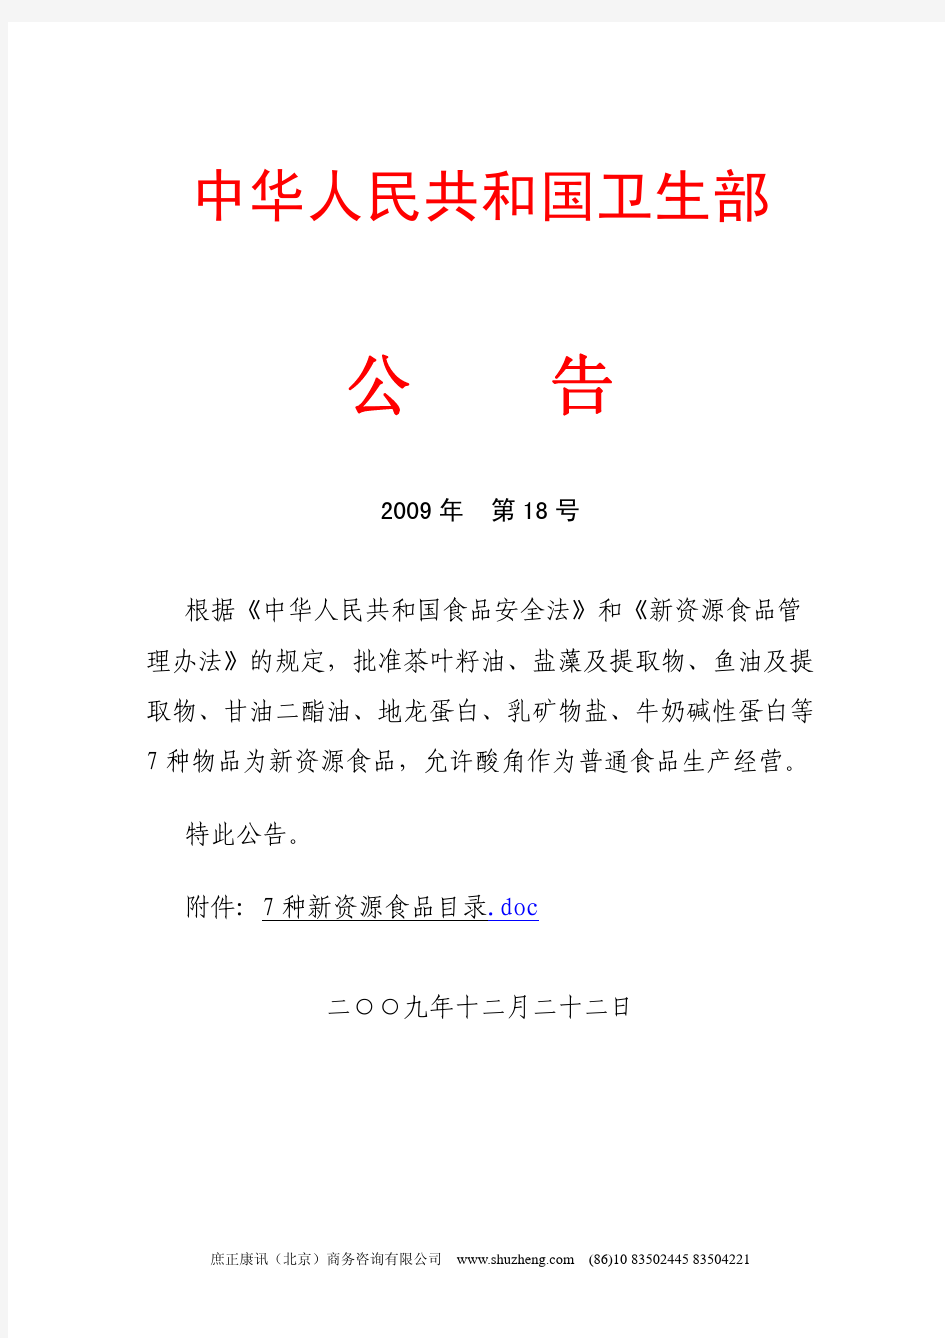 中华人民共和国卫生部 2009年第18号公告